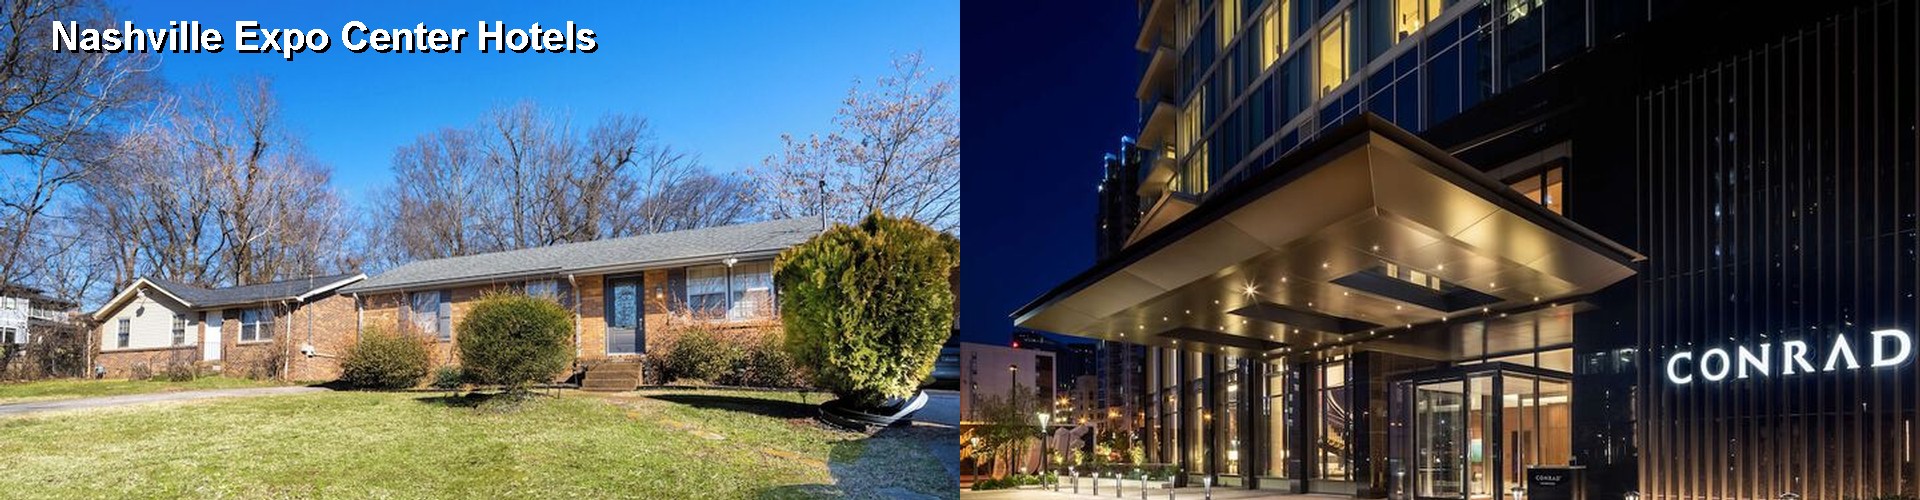 4 Best Hotels near Nashville Expo Center